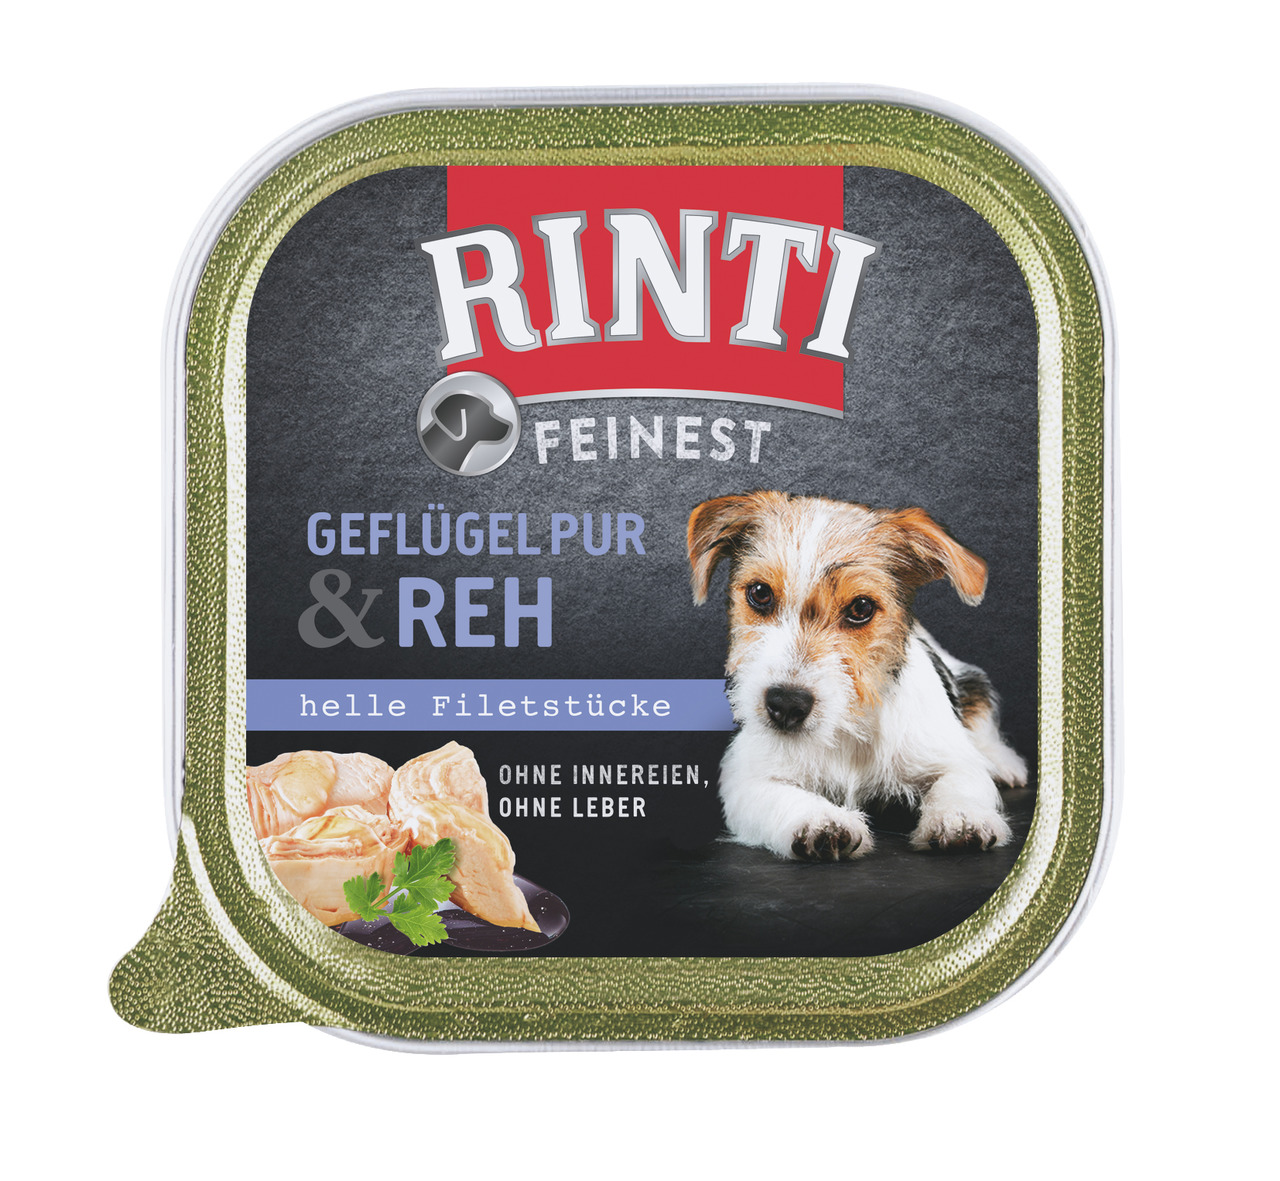 RINTI Feinest Geflügel Pur & Reh 150g Hundenassfutter